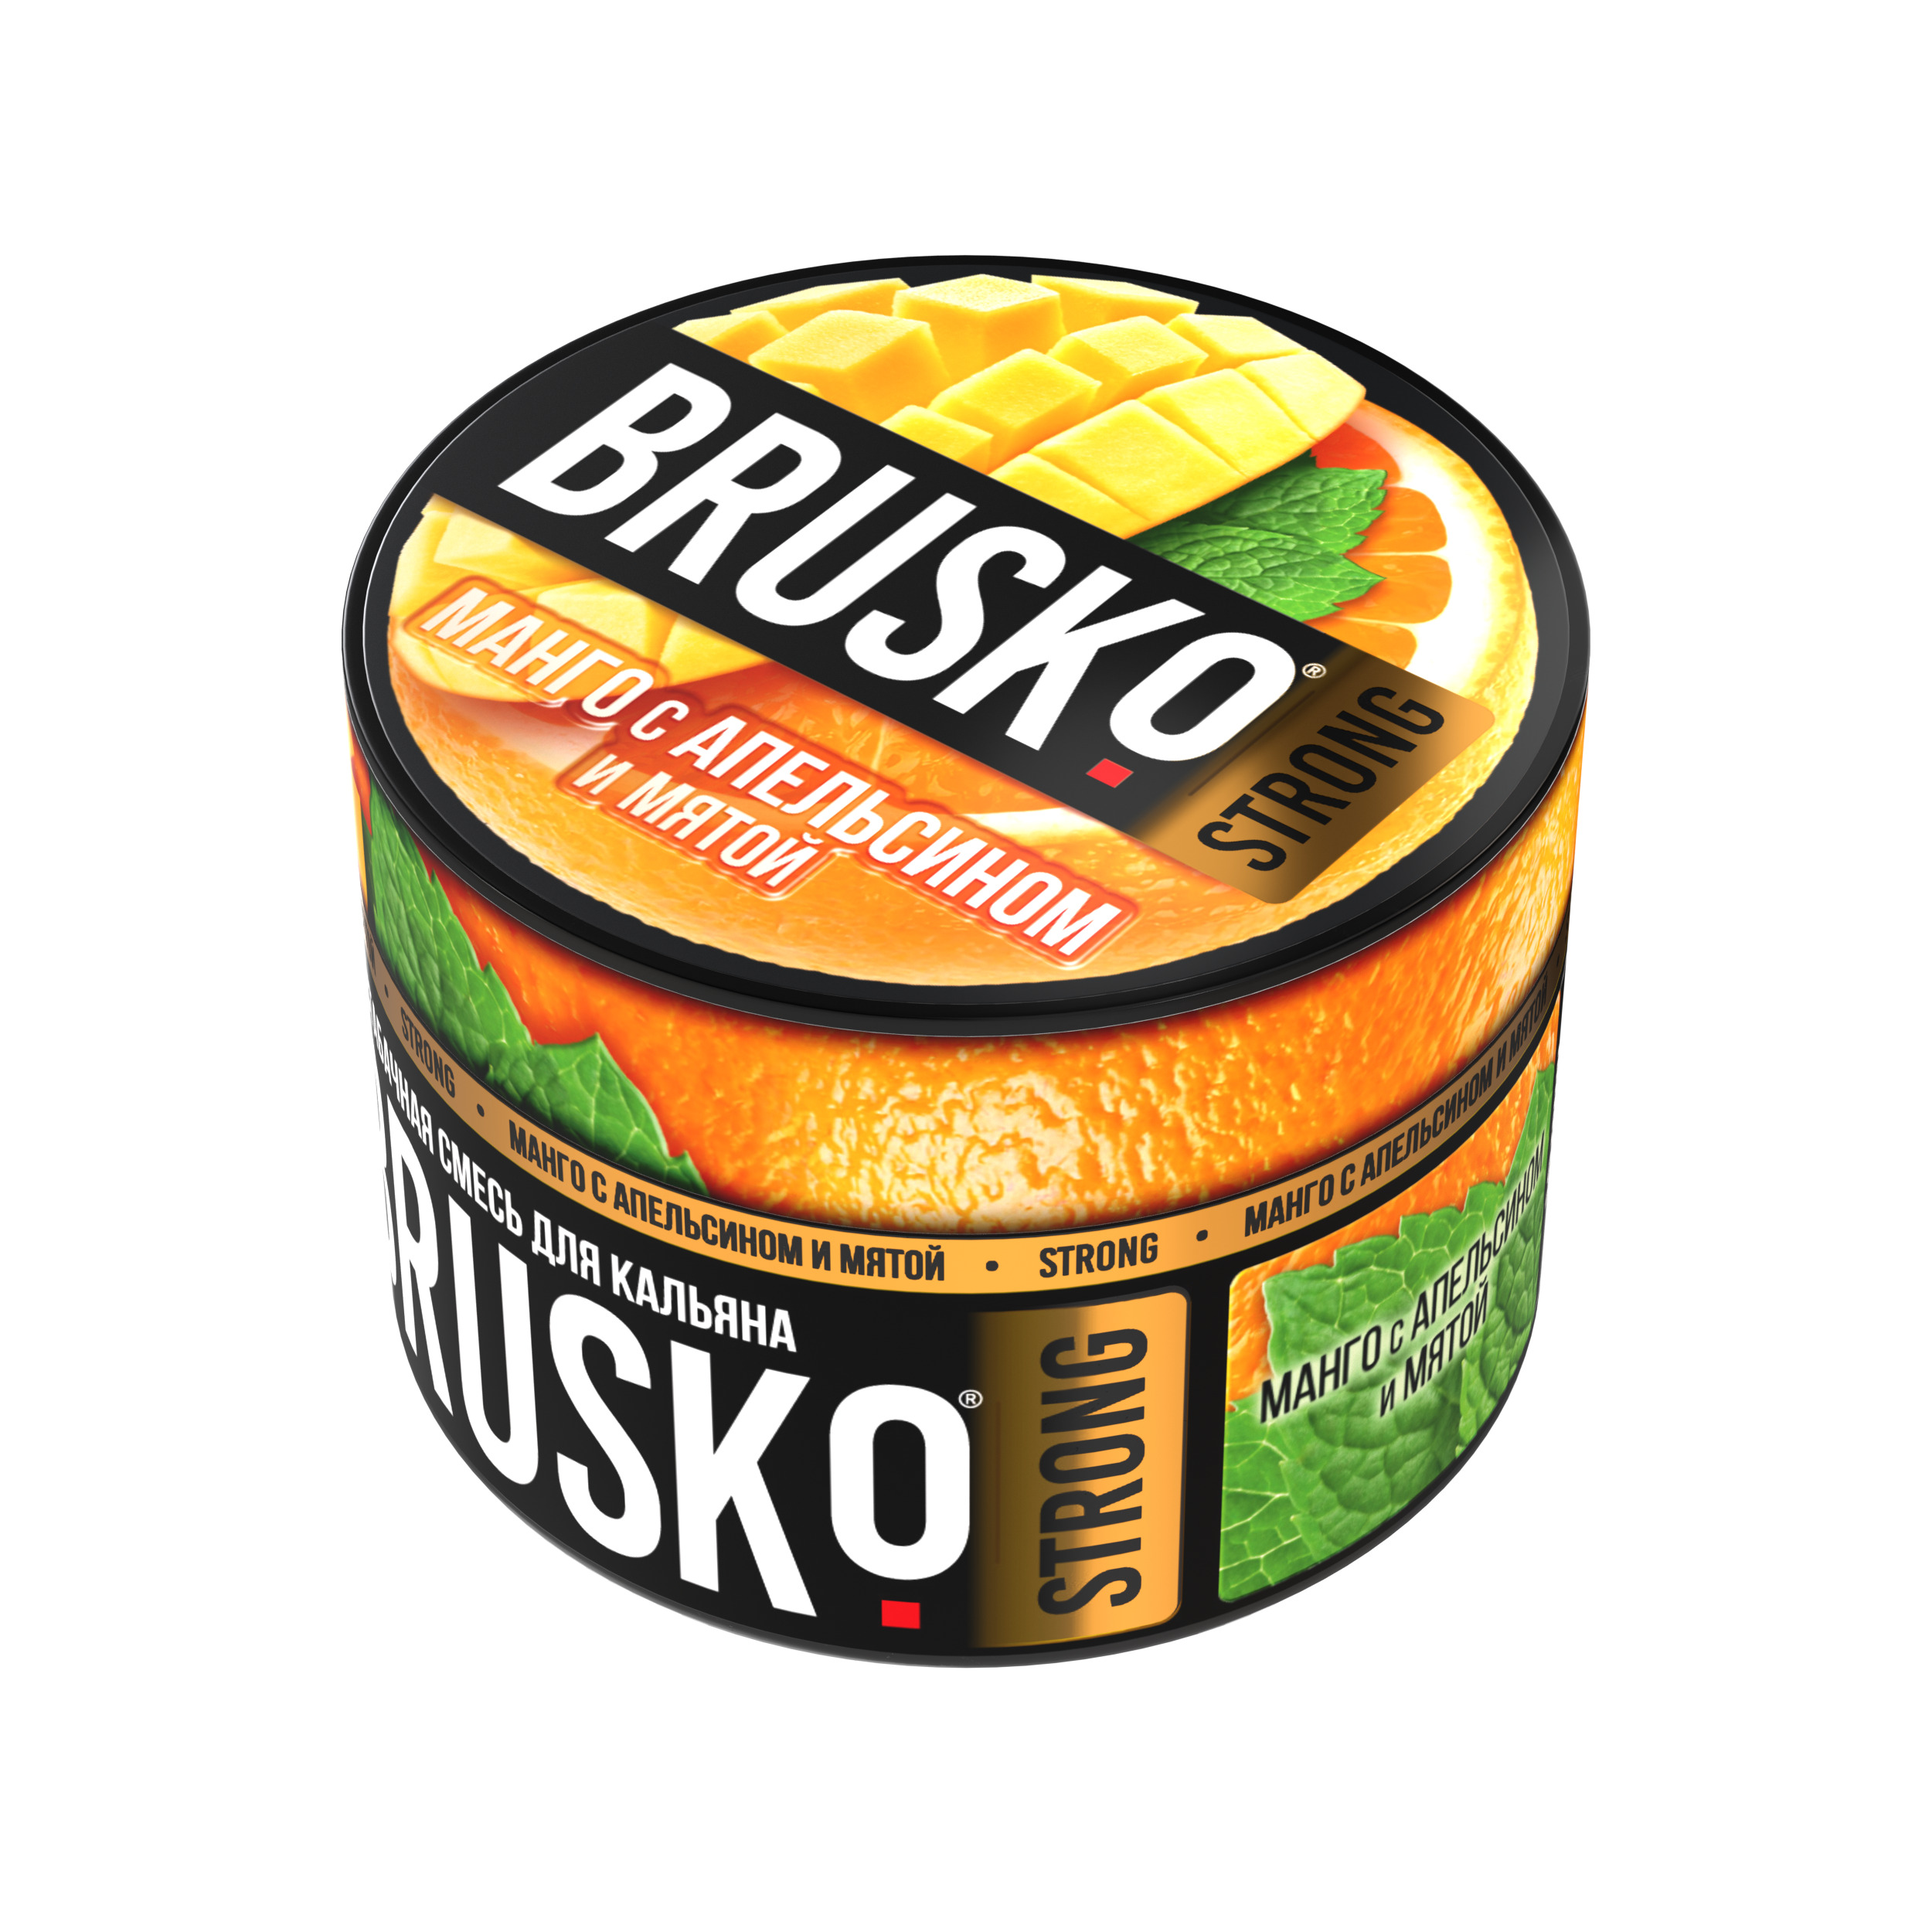 Бестабачная смесь для кальяна BRUSKO, 50 г, Манго c апельсином и мятой, Strong (М)